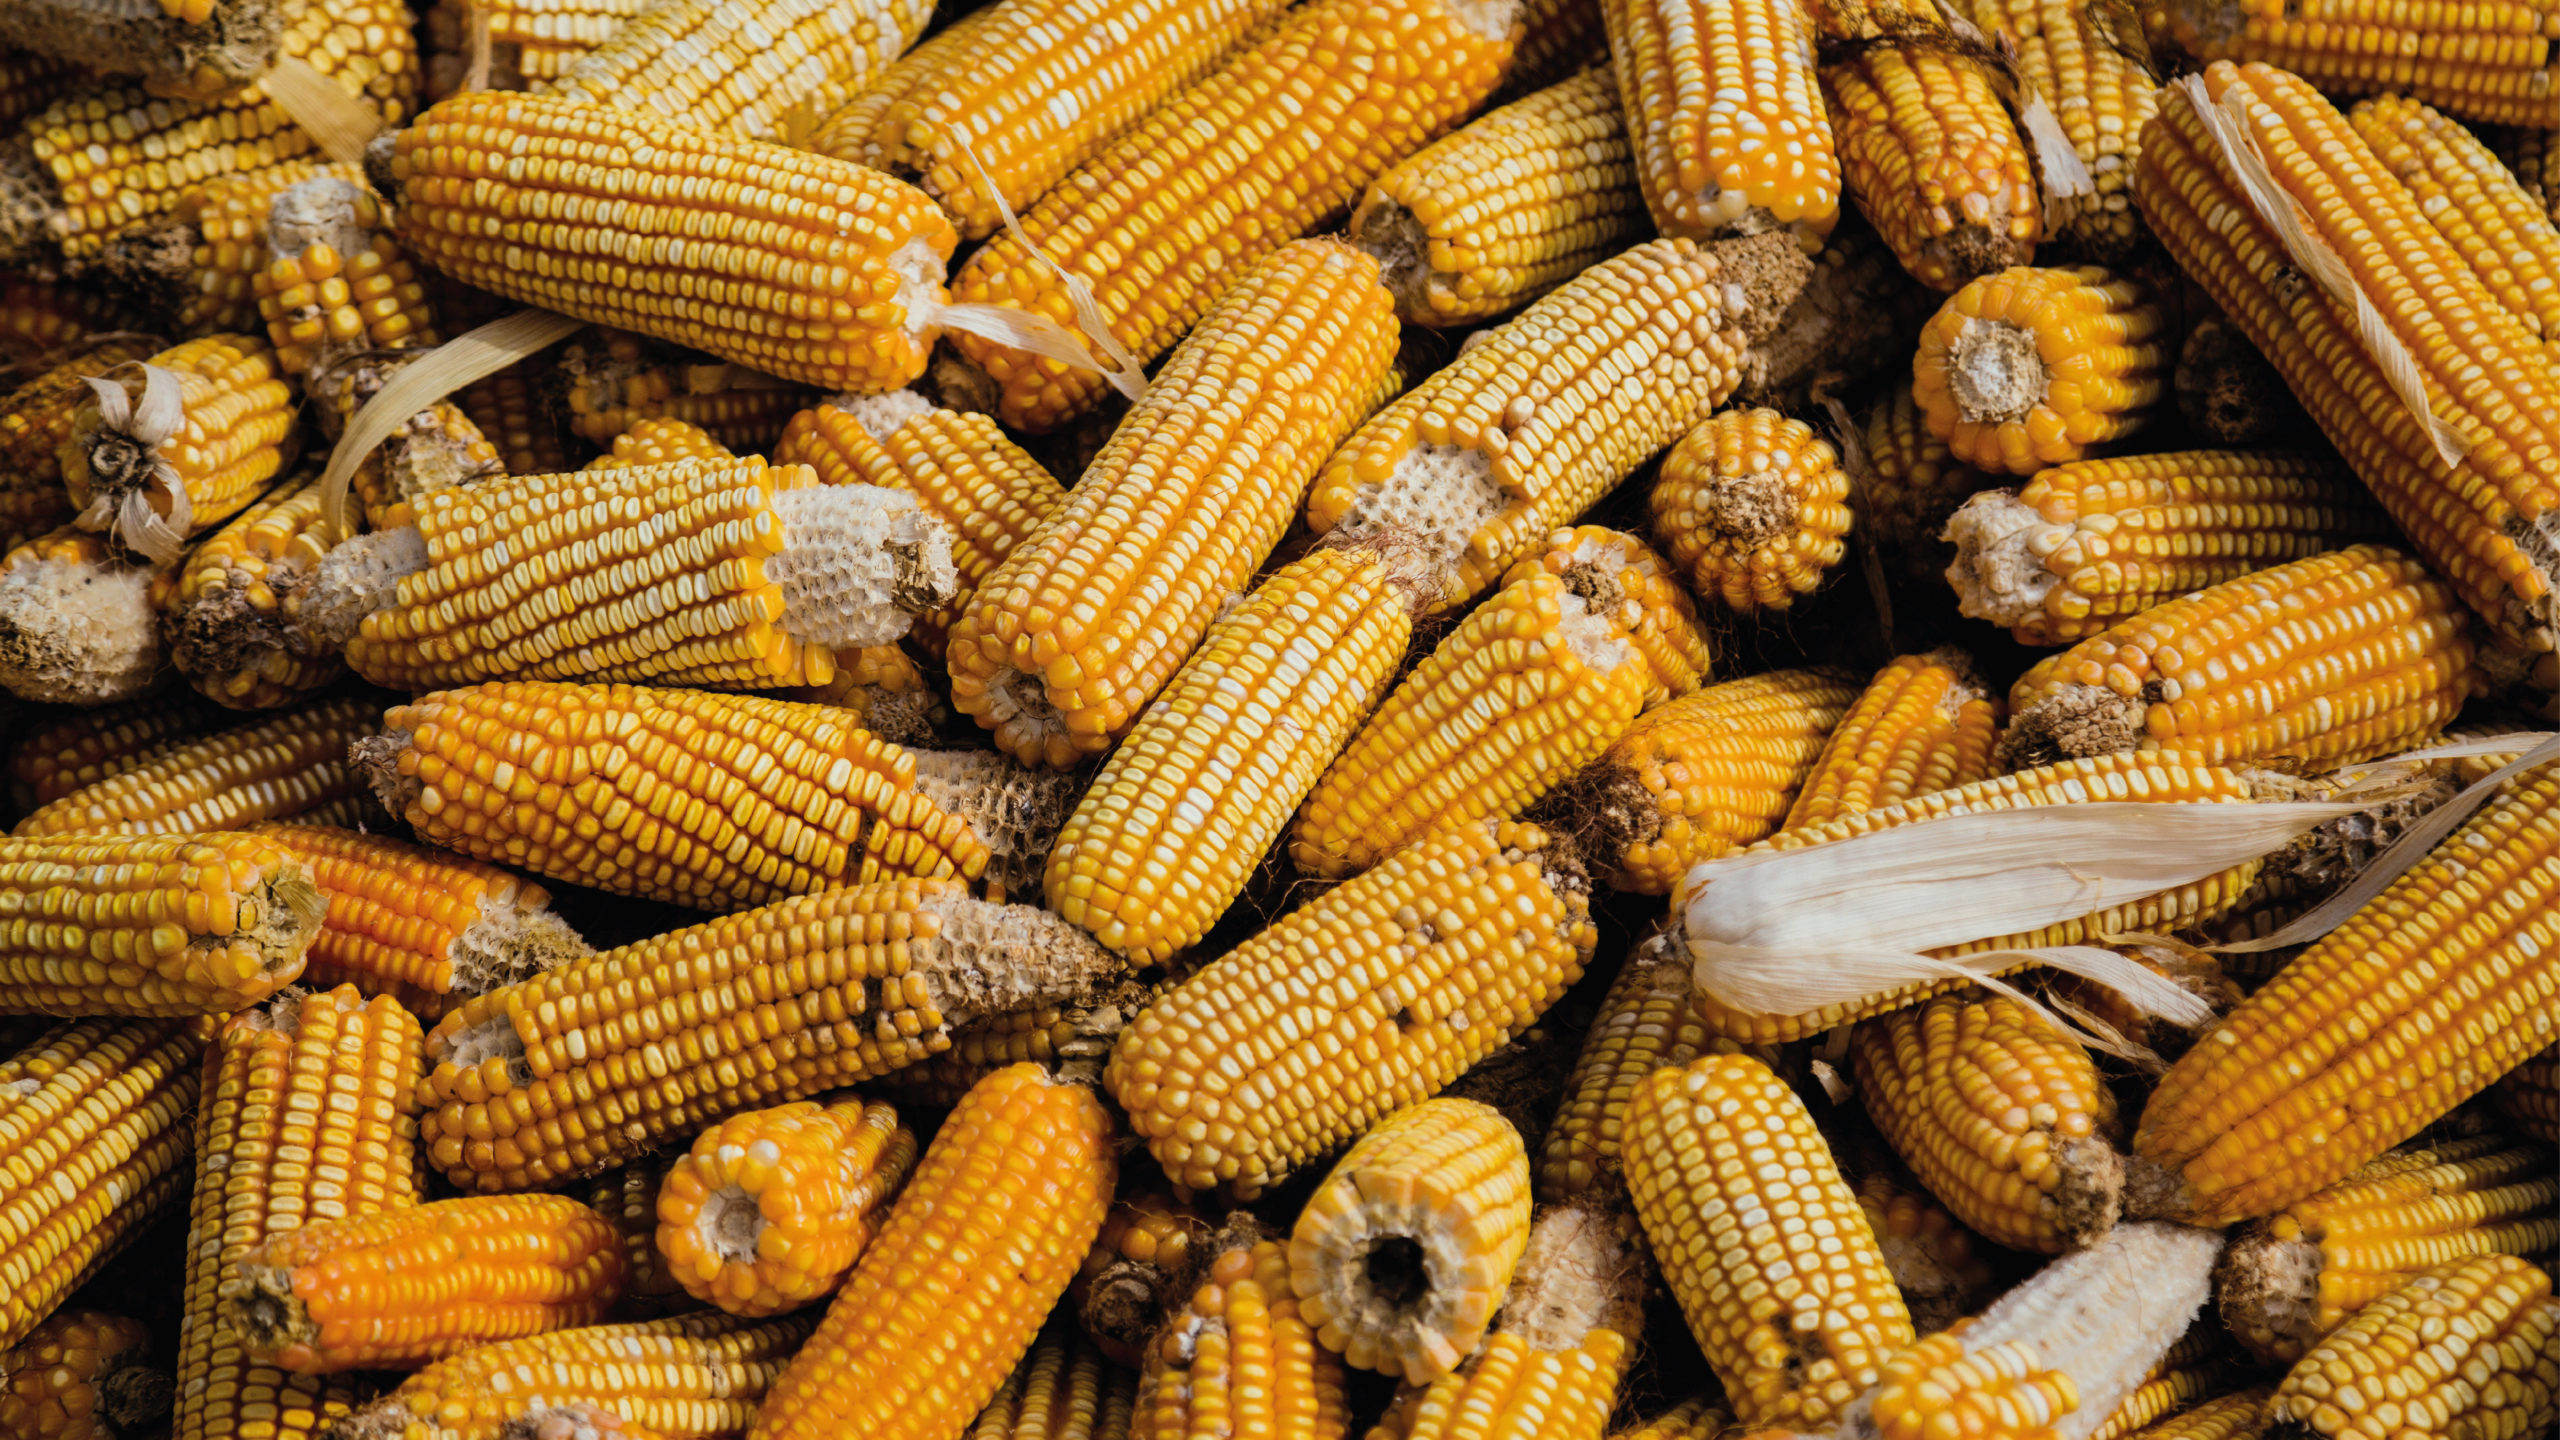 Es incosteable producir maíz, trigo y sorgo, advierten productores de Sinaloa